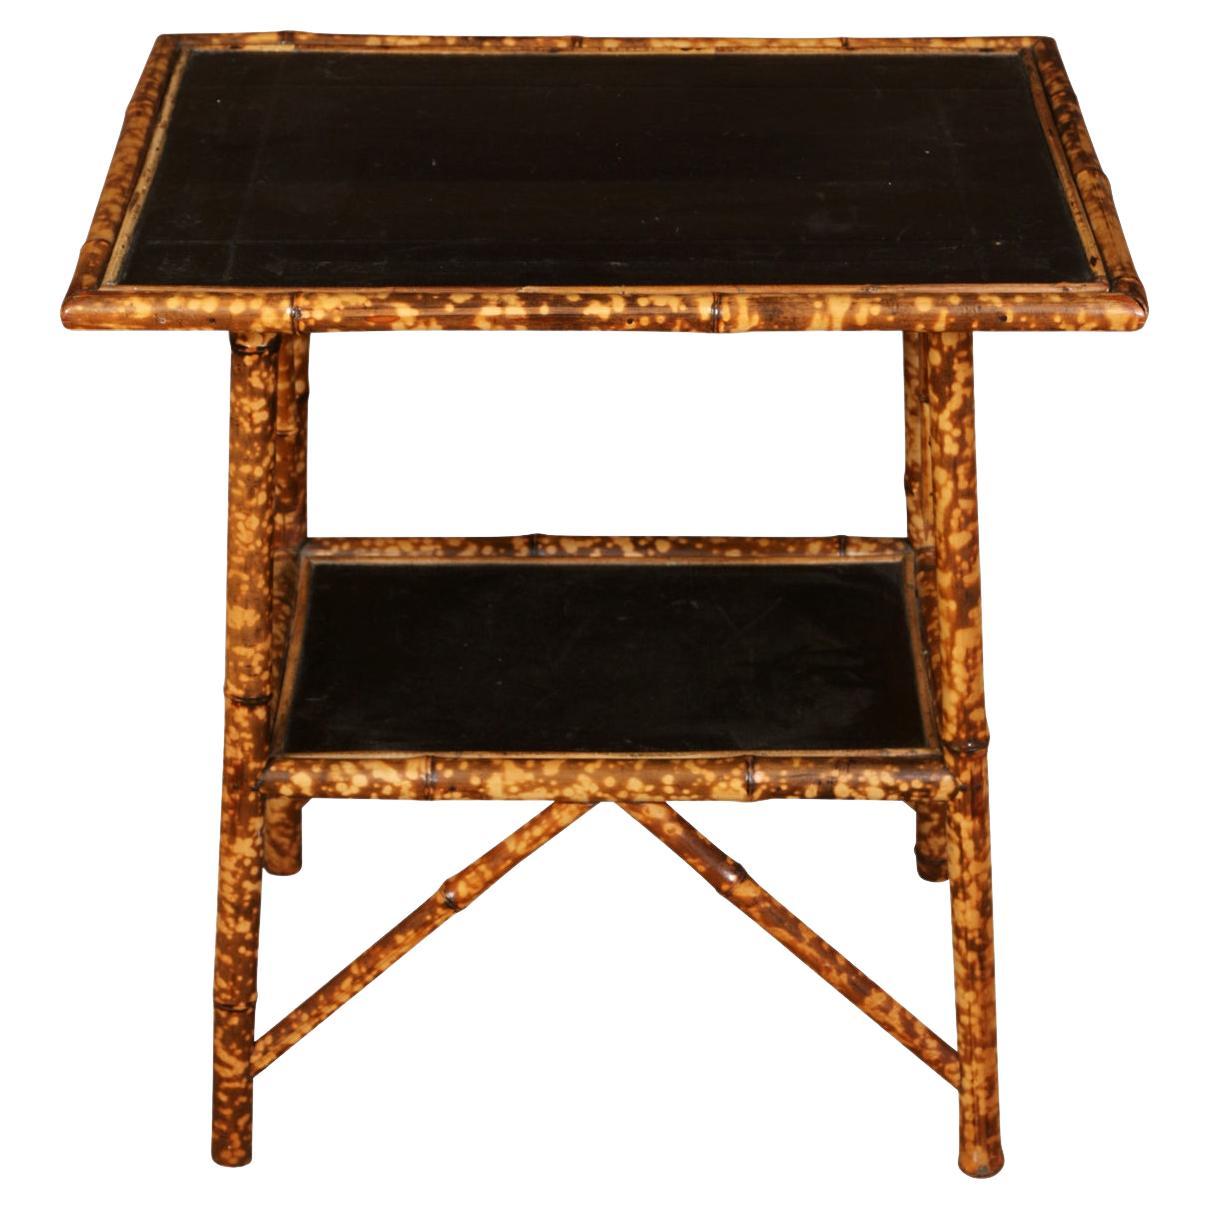 Table à deux niveaux en bambou avec étagère supérieure en cuir noir